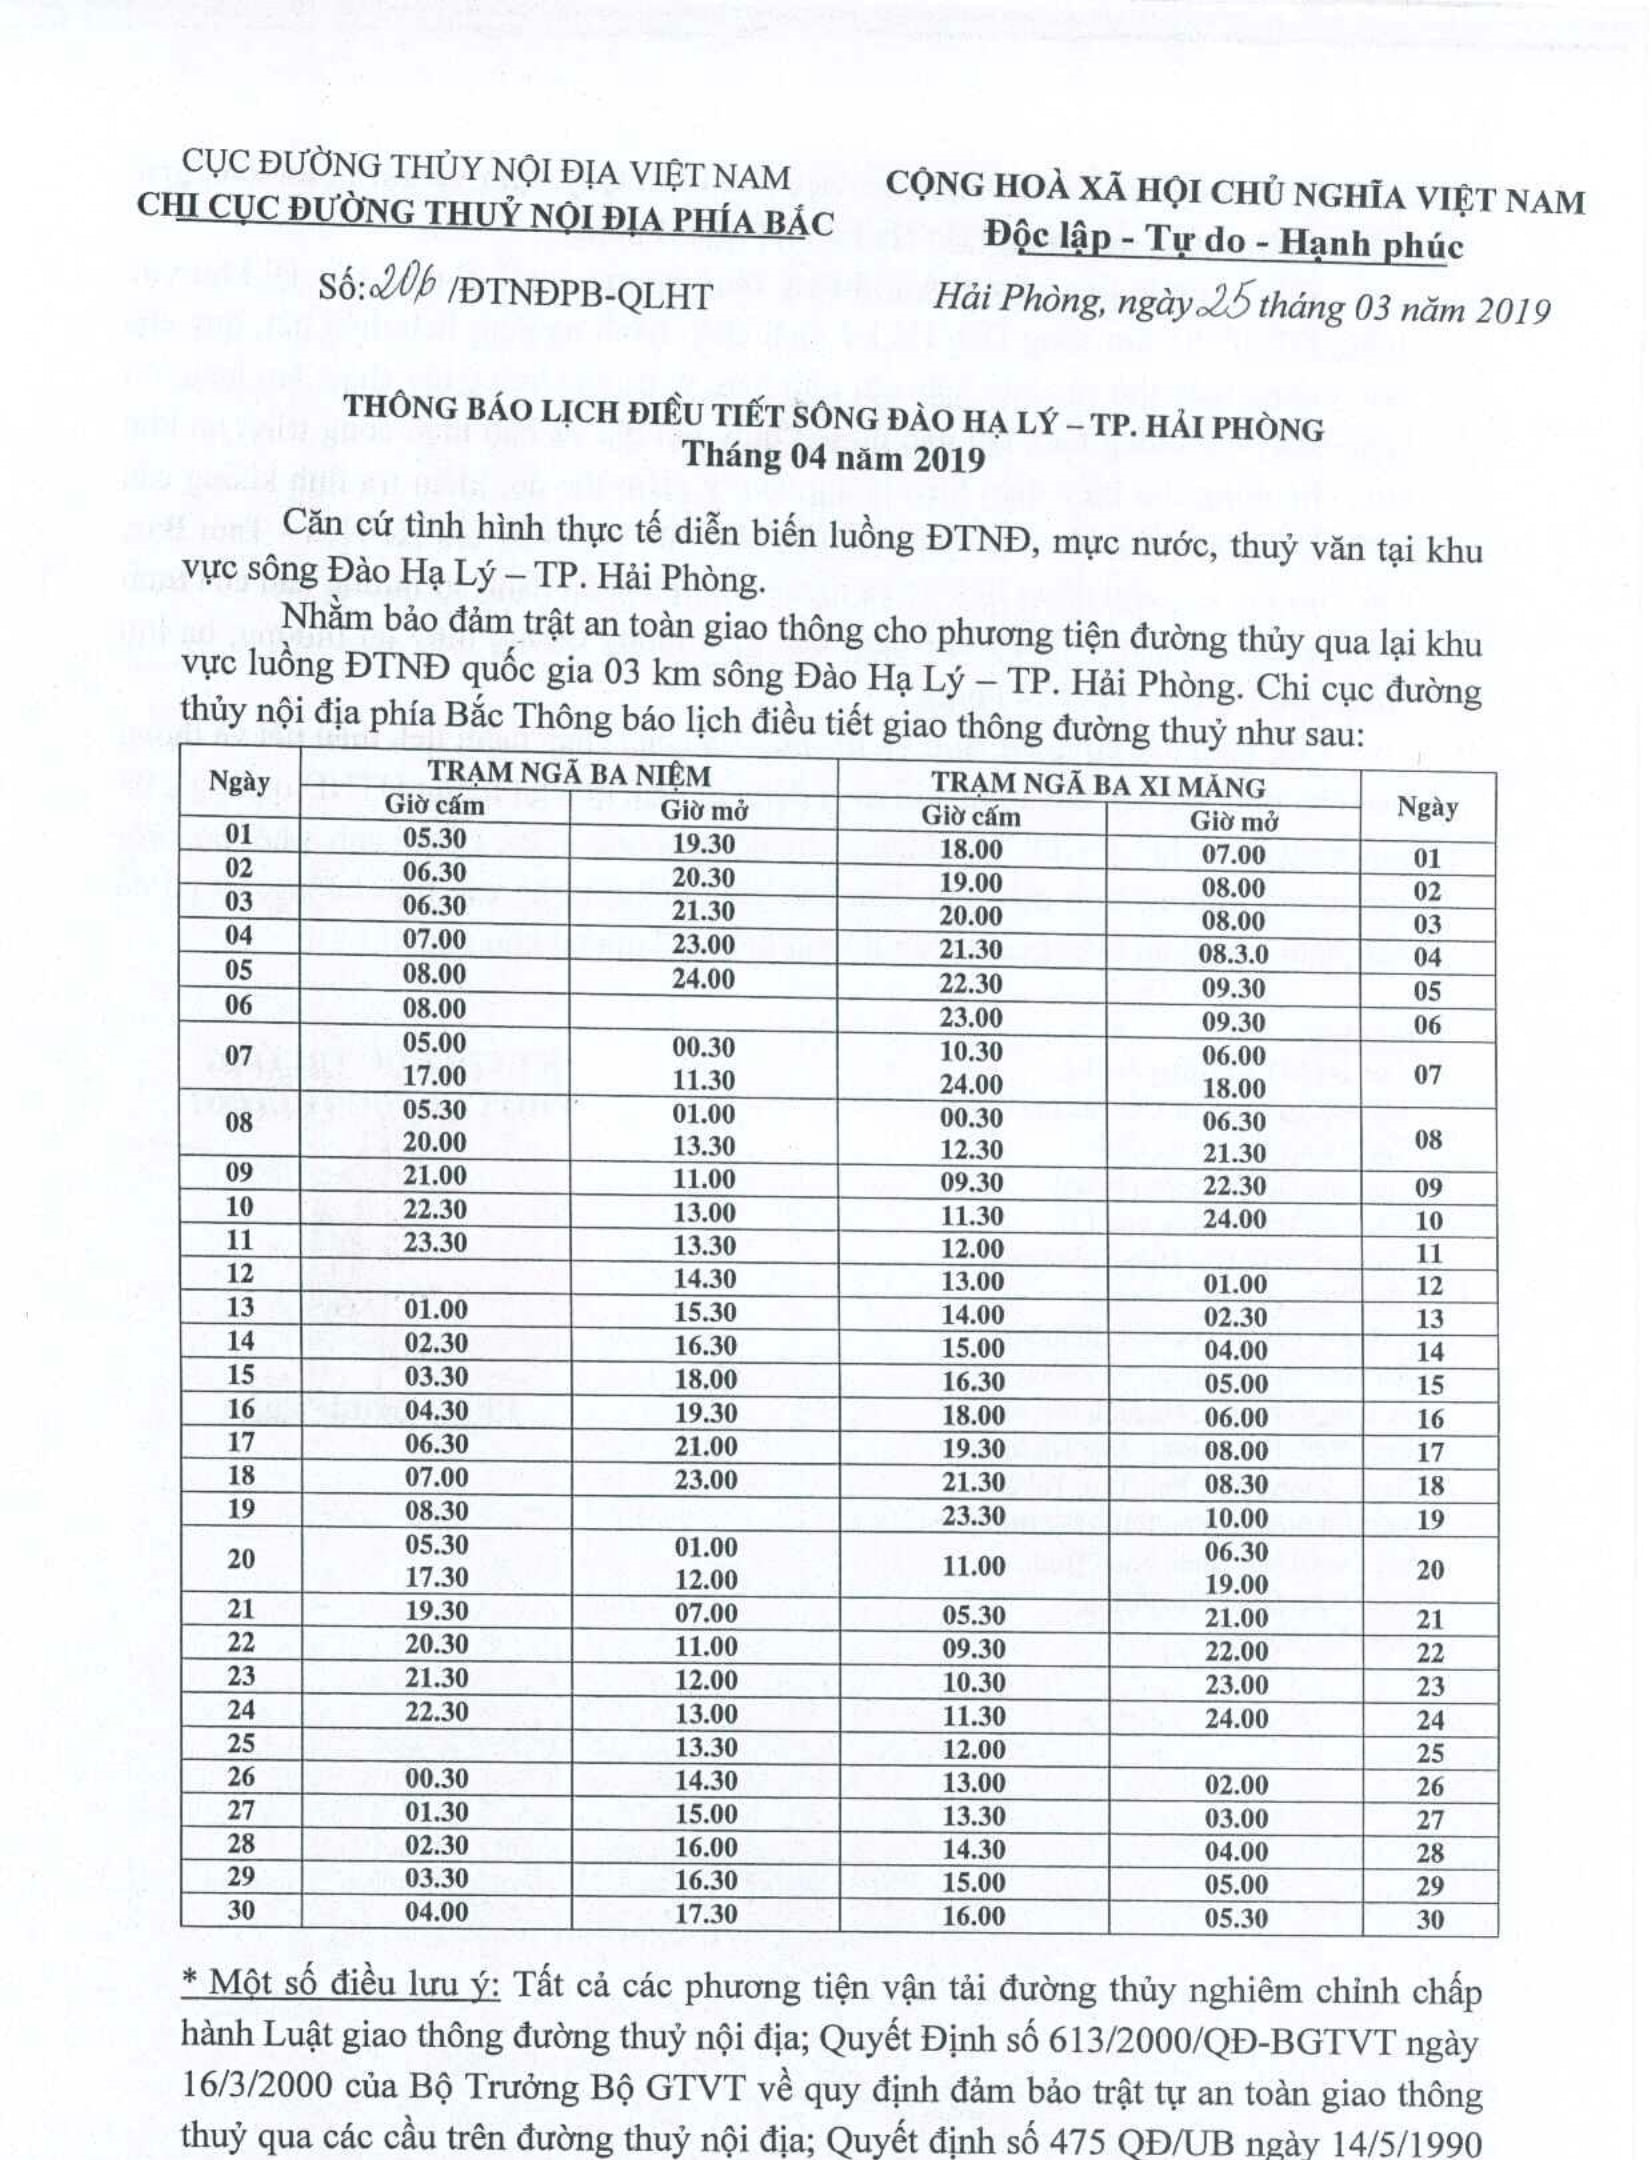 Thông báo lịch điều tiết sông Đào Hạ Lý - TP Hải Phòng tháng 04/2019